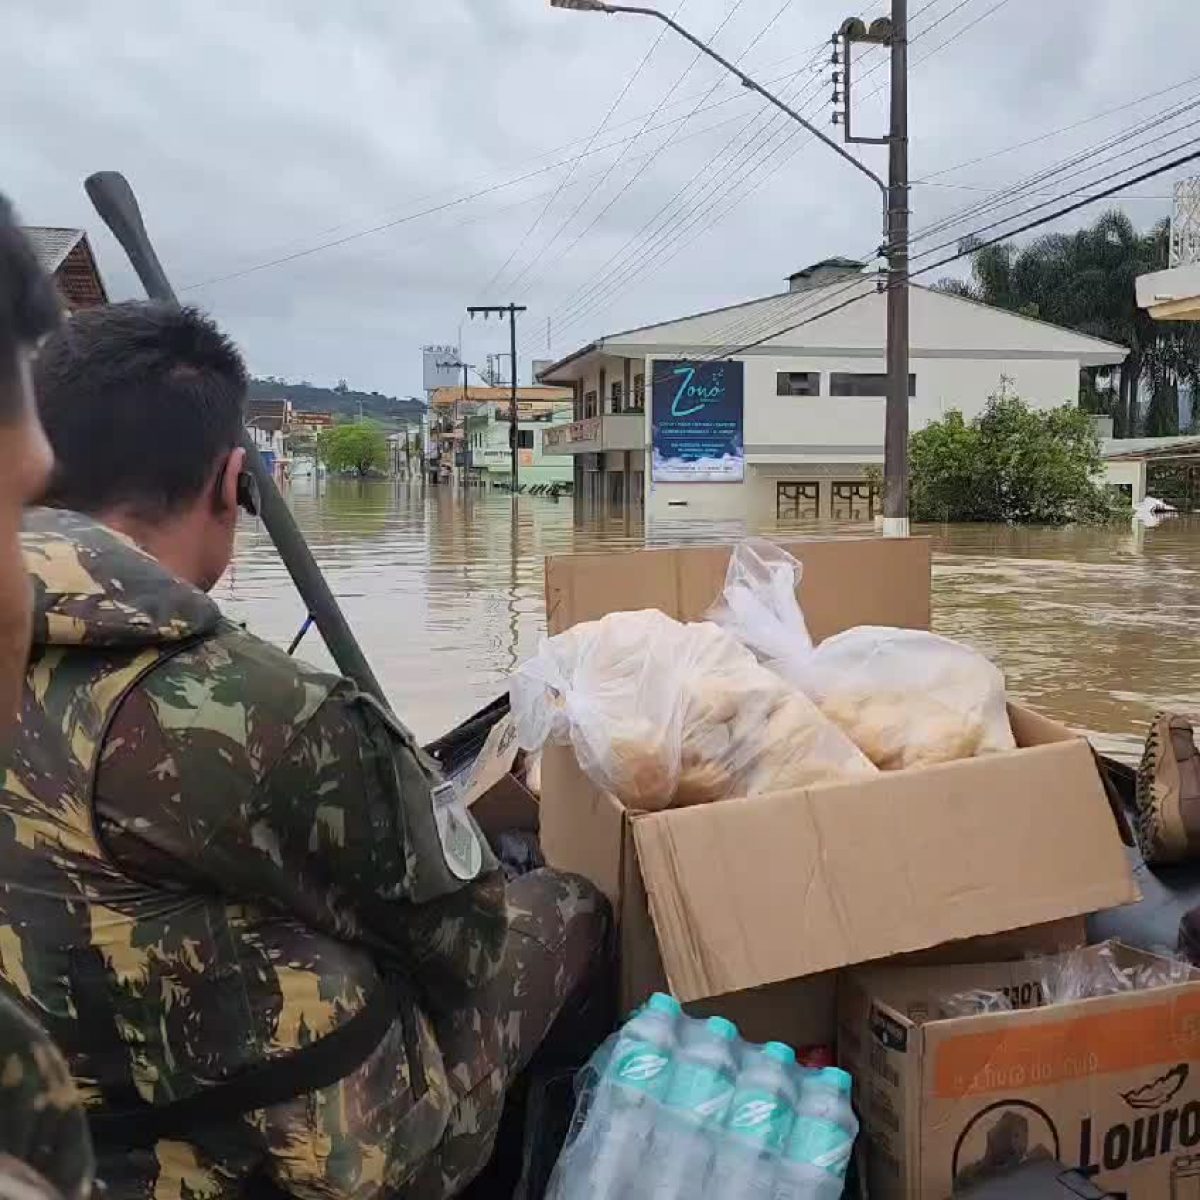 Imagens feitas nesta terça-feira (10) mostram Taió embaixo d'água após enchente - Exército Brasileiro/Divulgação/ND